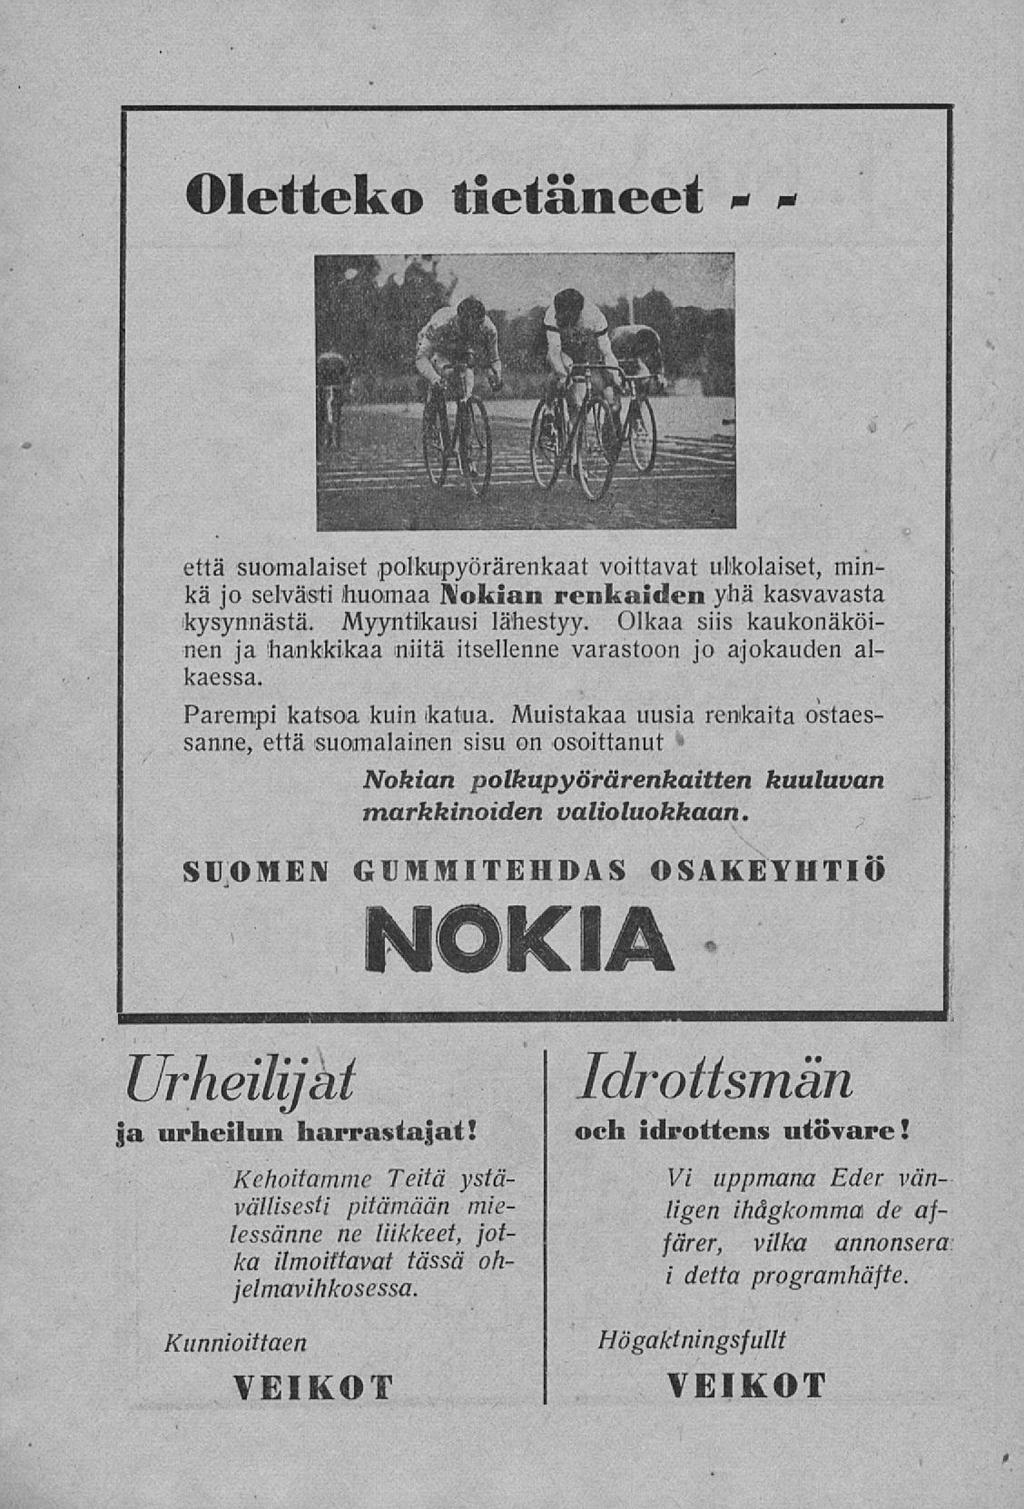 Oletteko tietäneet - * v että suomalaiset polkupyörärenkaat voittavat ulkolaiset, minkä jo selvästi huomaa Nokian renkaiden yhä kasvavasta kysynnästä. Myyntilkausi lähestyy.